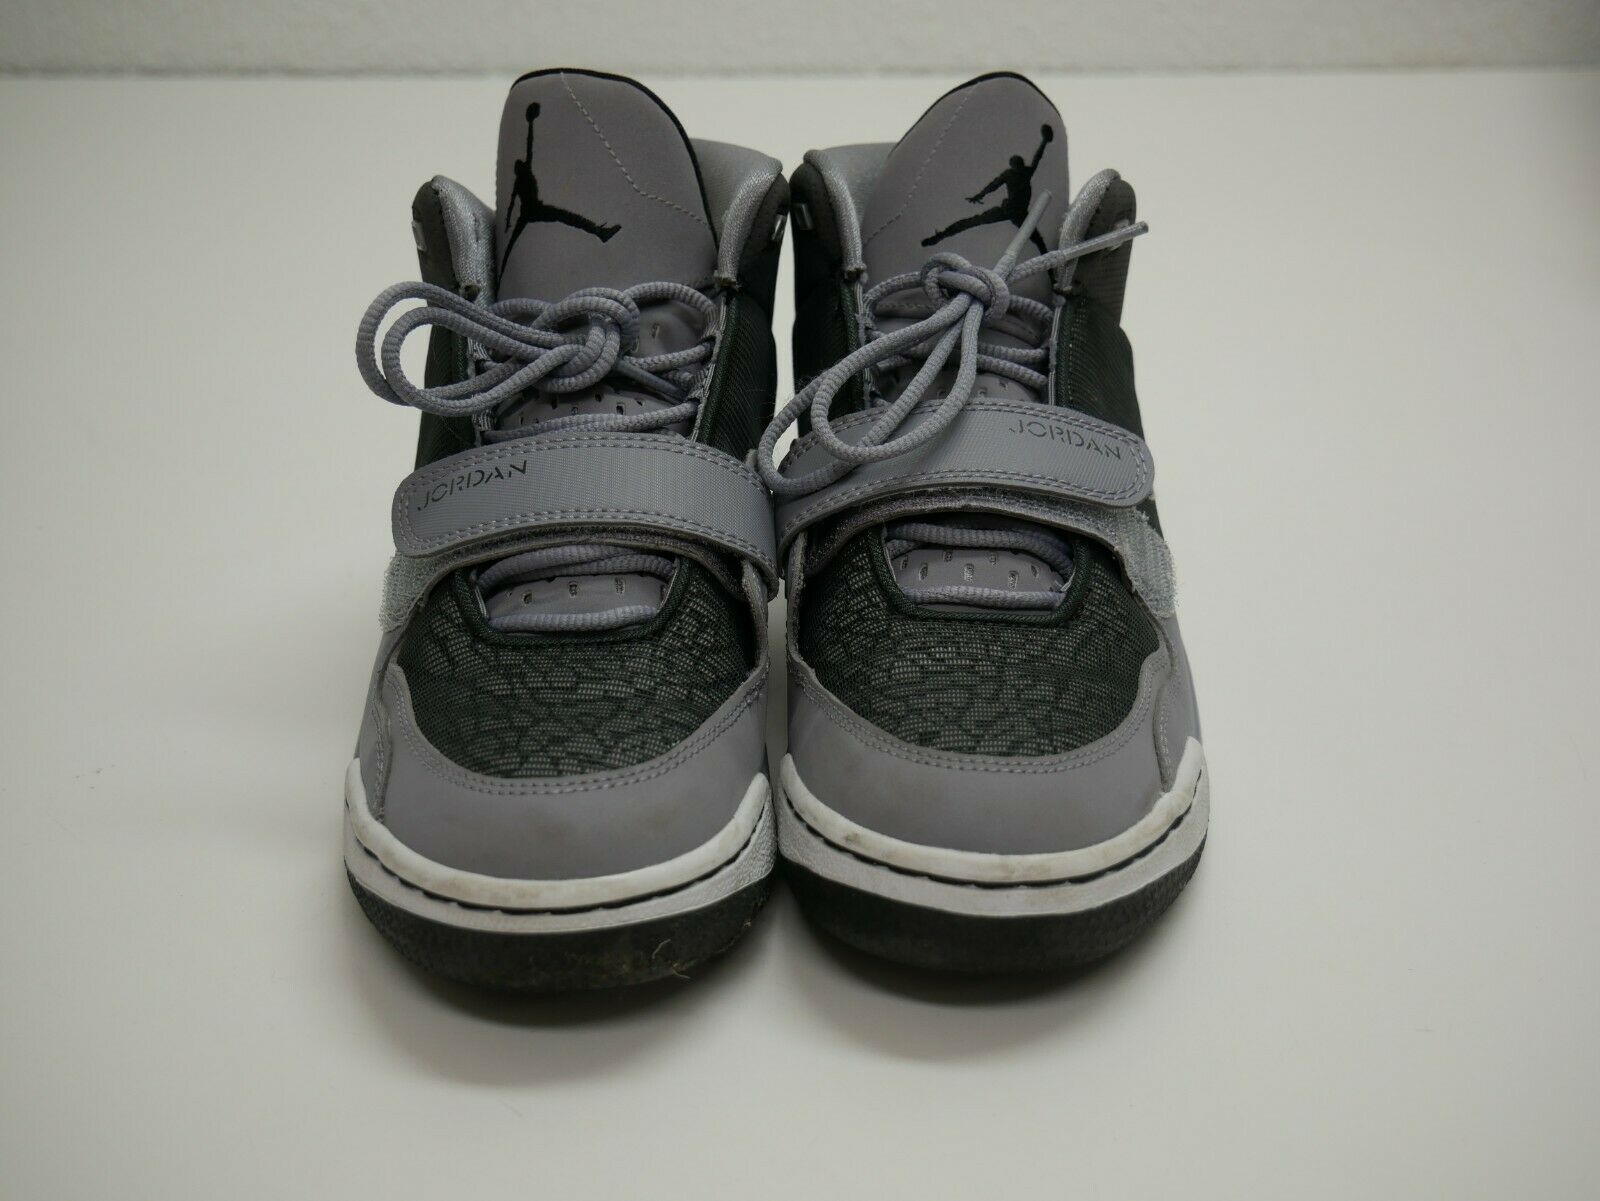 Nike Air Jordan Gray Basketball Kids Sneakers US Size 5.5Y Eur